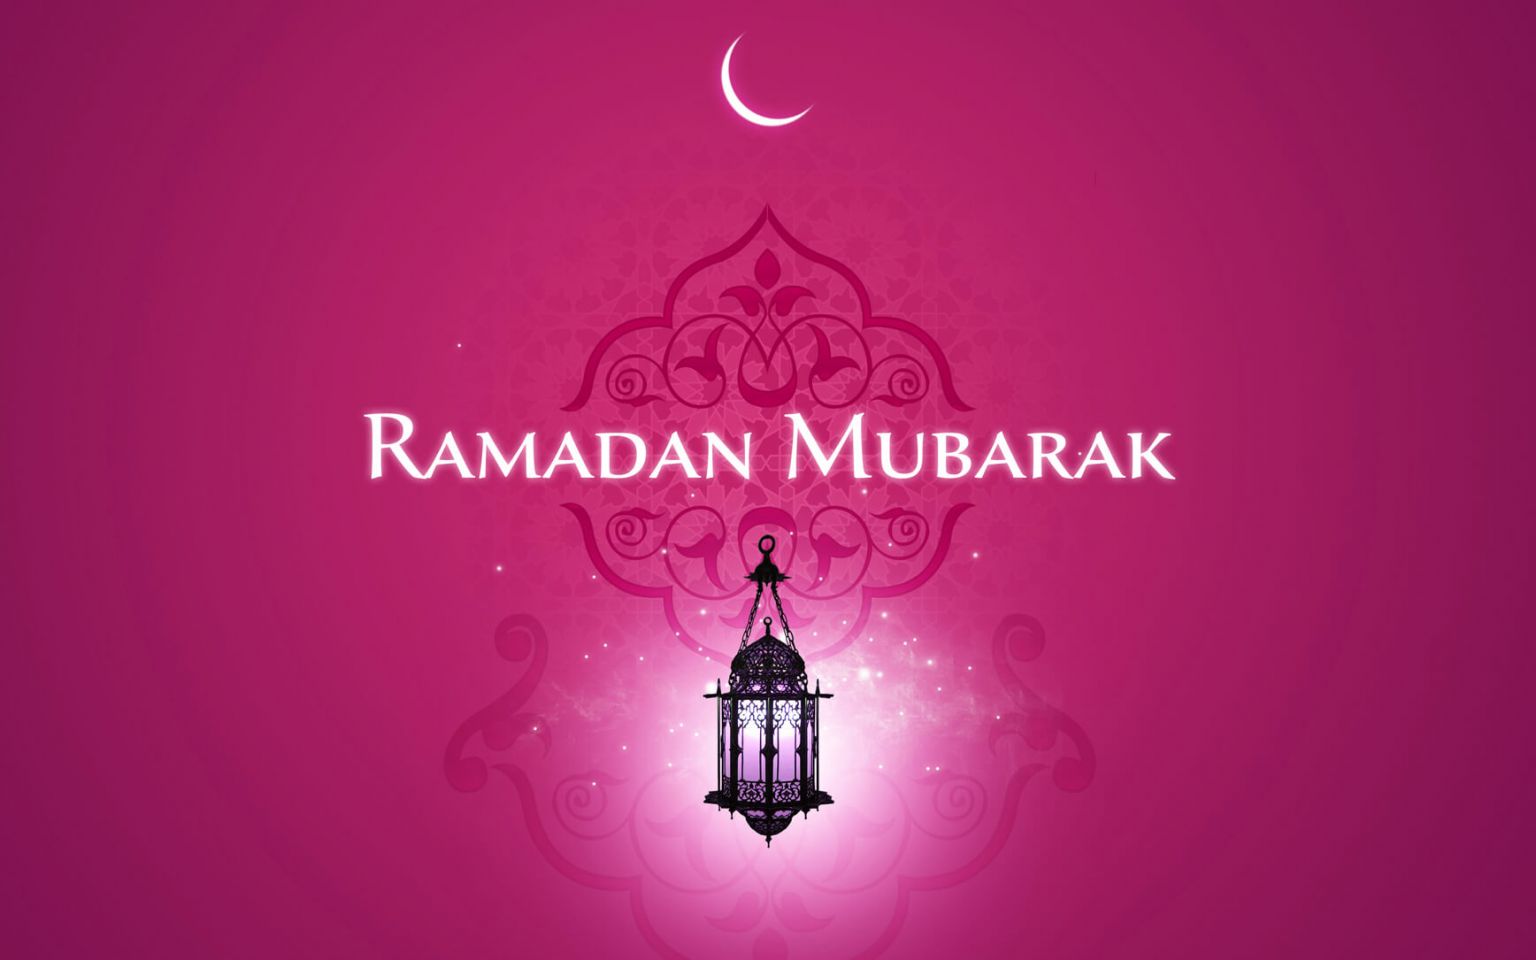 Ramadan Mubarak (